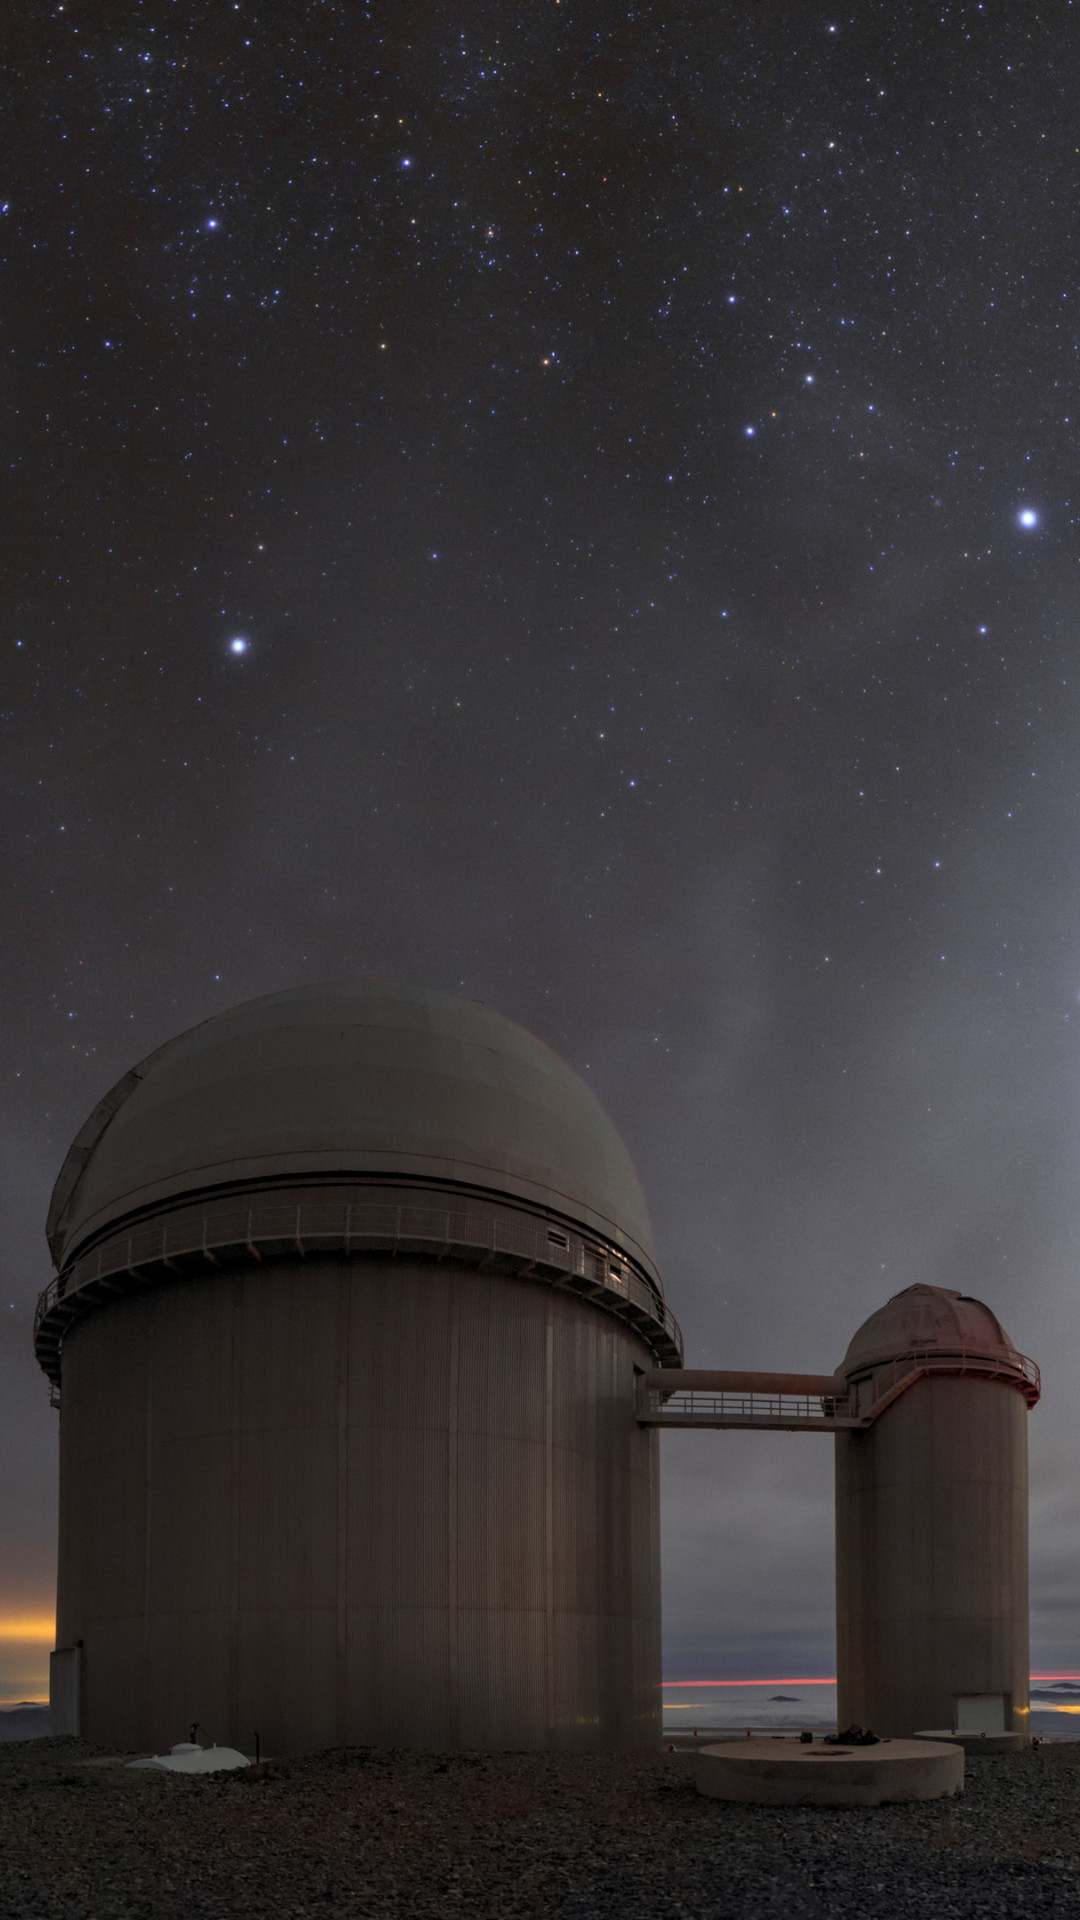 La Silla Observatory in Chile wallpaper 1080x1920